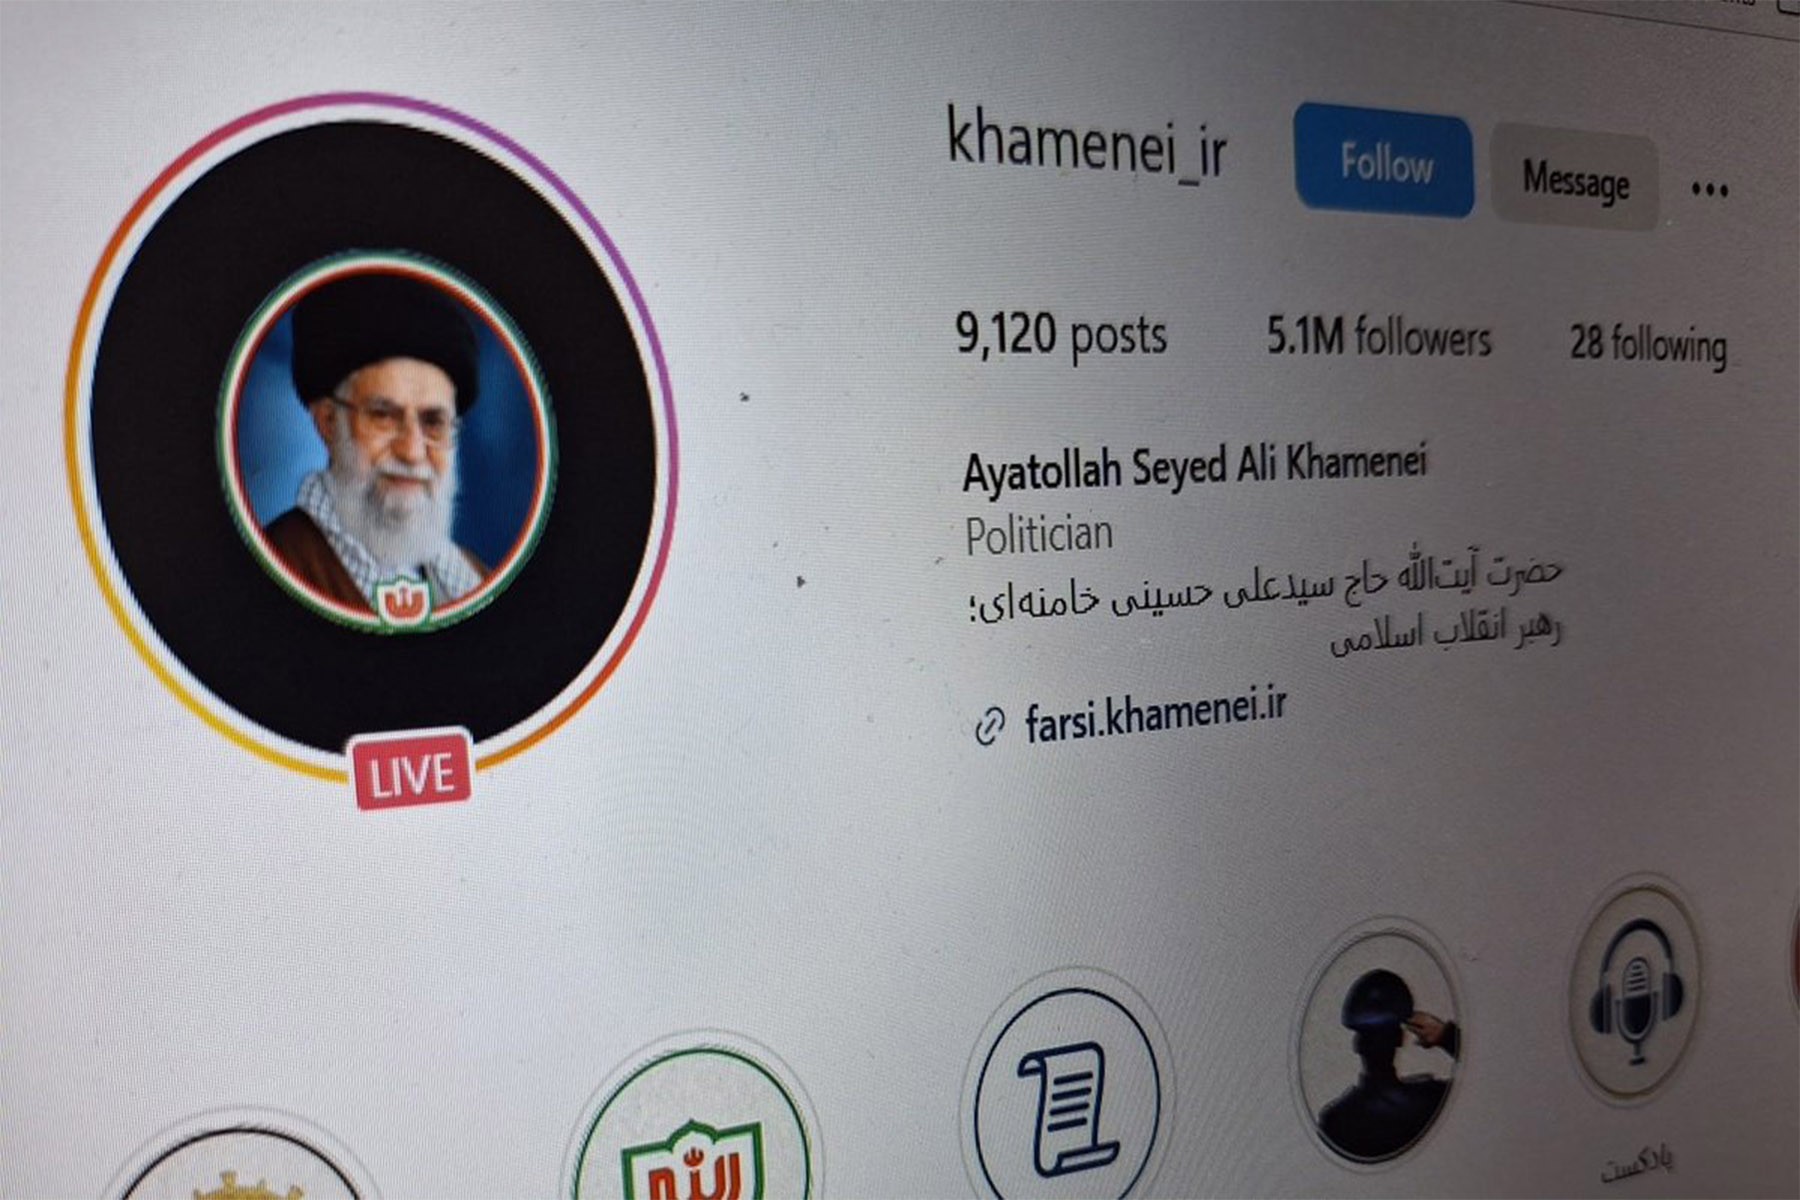 متا اکانت های فیسبوک و اینستاگرام علی خامنه ای رهبر جمهوری اسلامی را حذف کرد